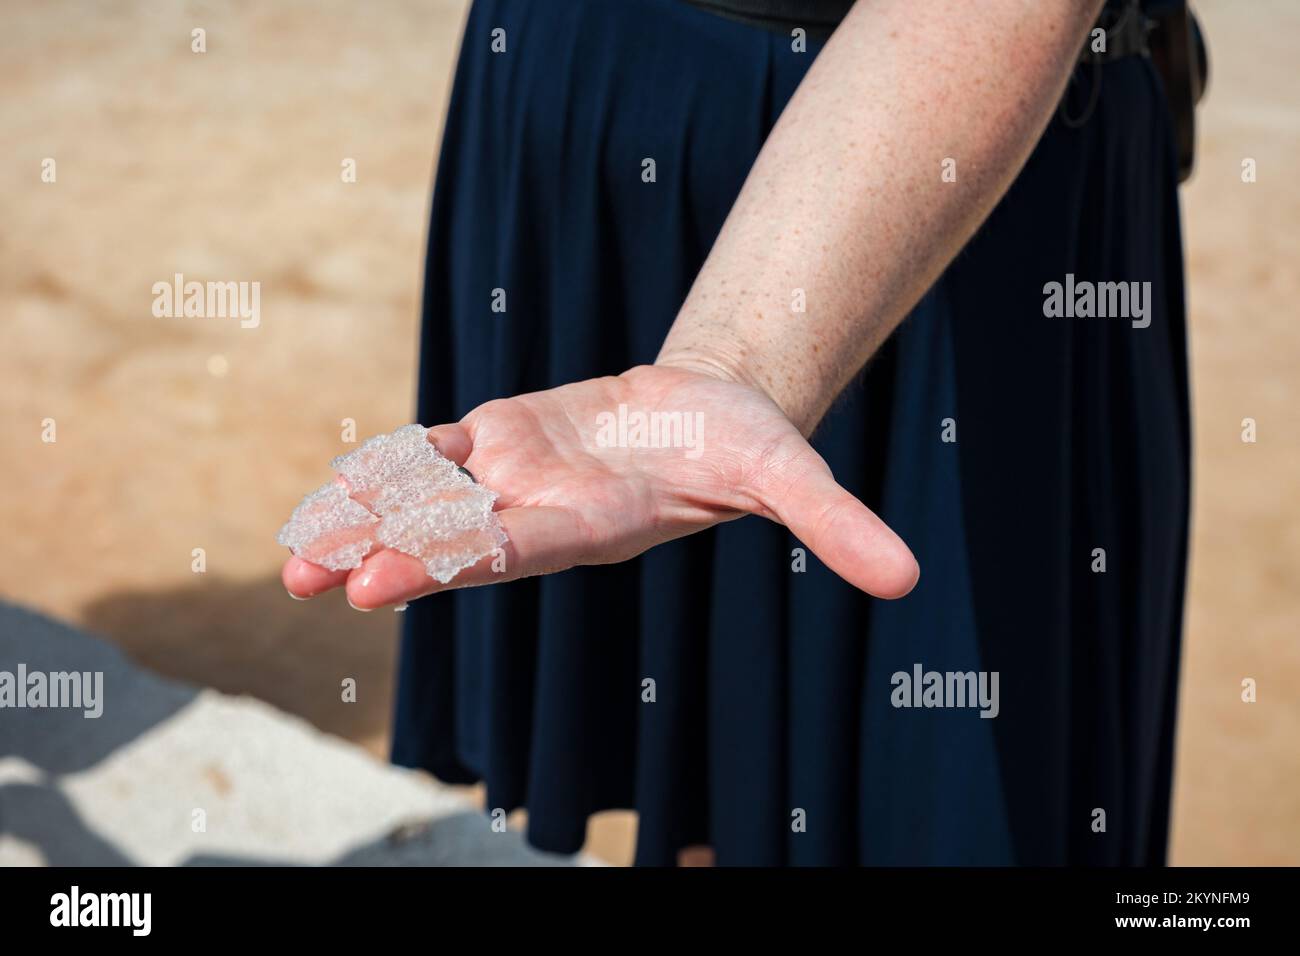 Fleur de sel, est un sel qui se forme comme une croûte mince et délicate à la surface de l'eau de mer dans la main d'une femme, fraîchement recueilli de la fiel de sel Banque D'Images